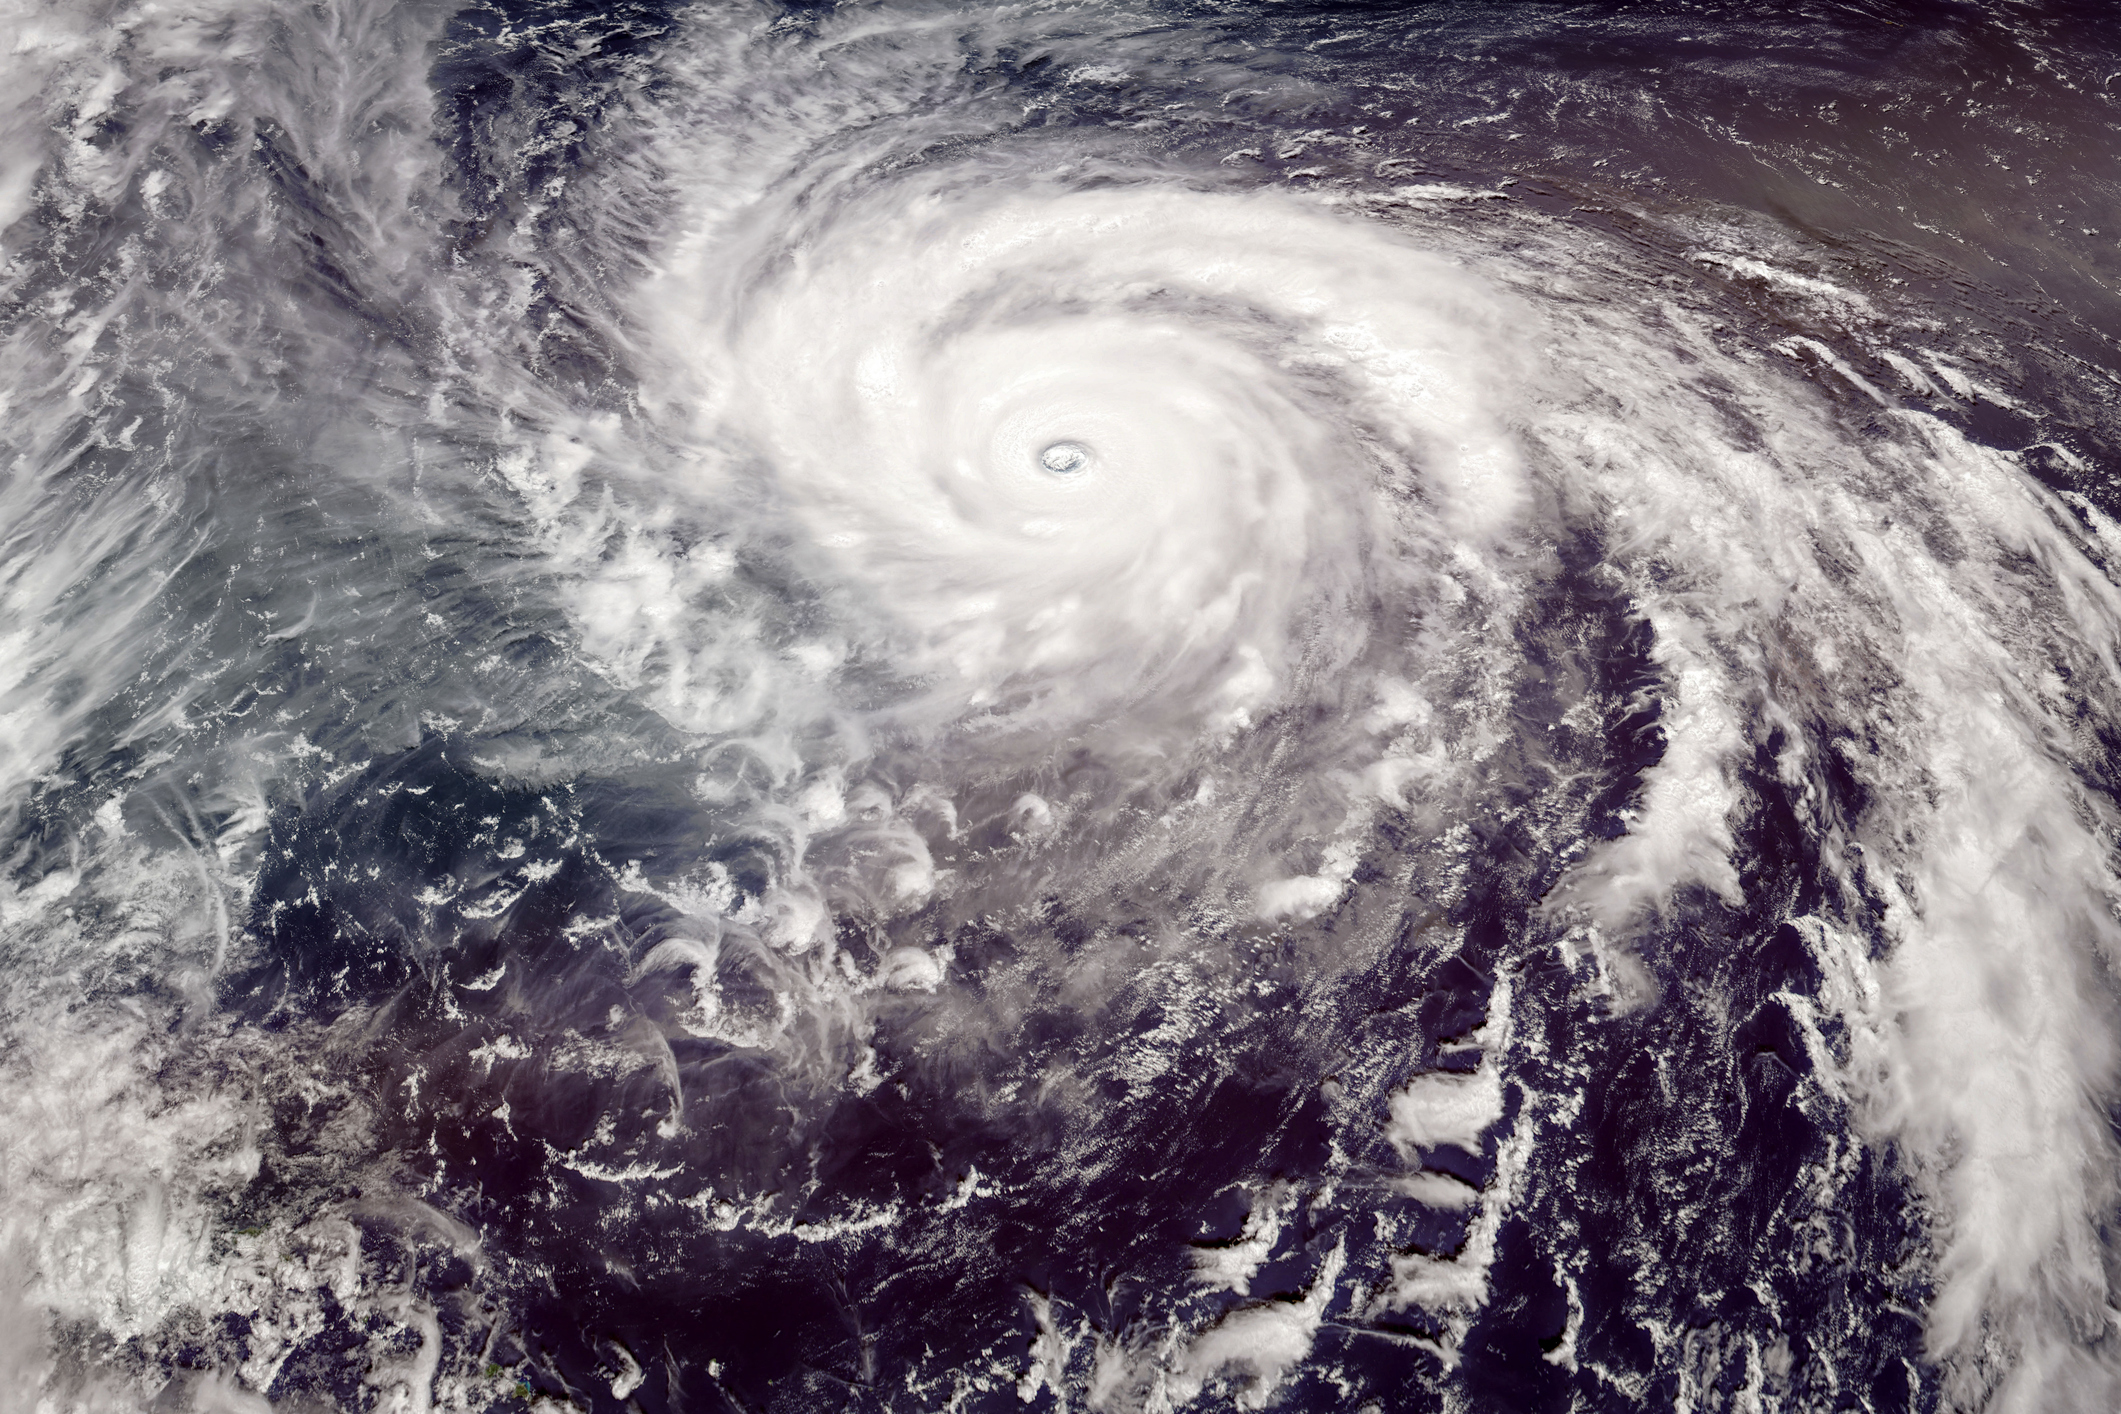 NASA запустит миссию для изучения тропических штормов